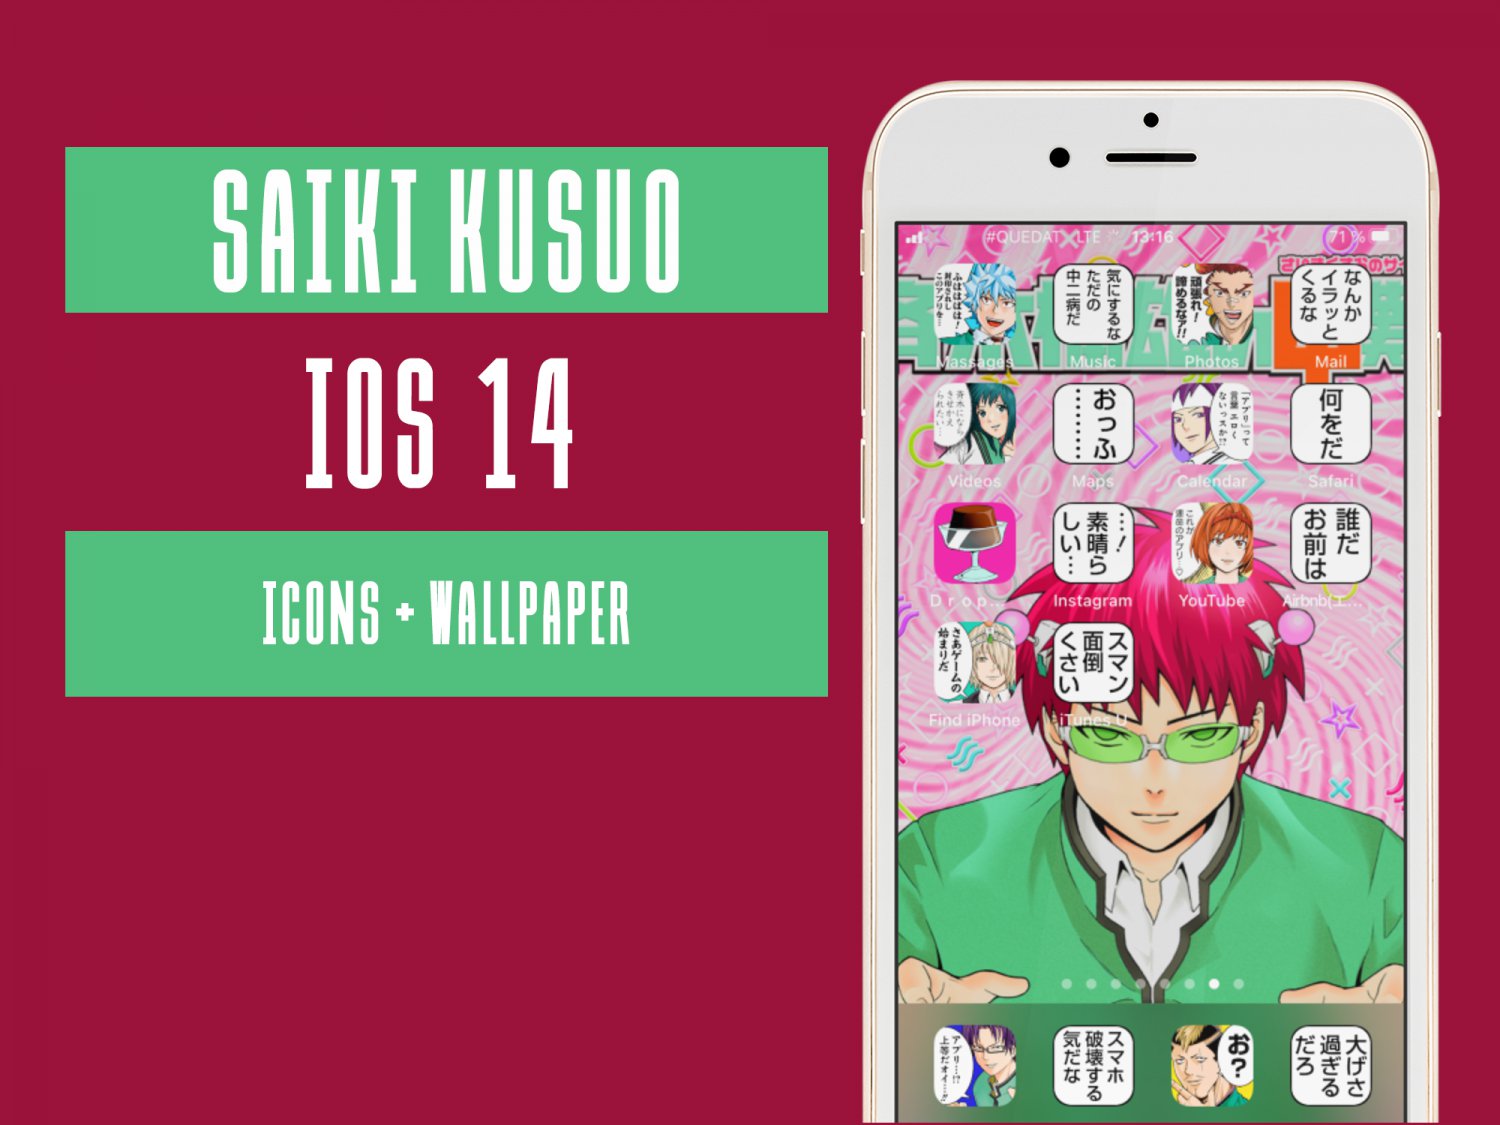 50+] Anime iPhone Wallpapers - WallpaperSafari